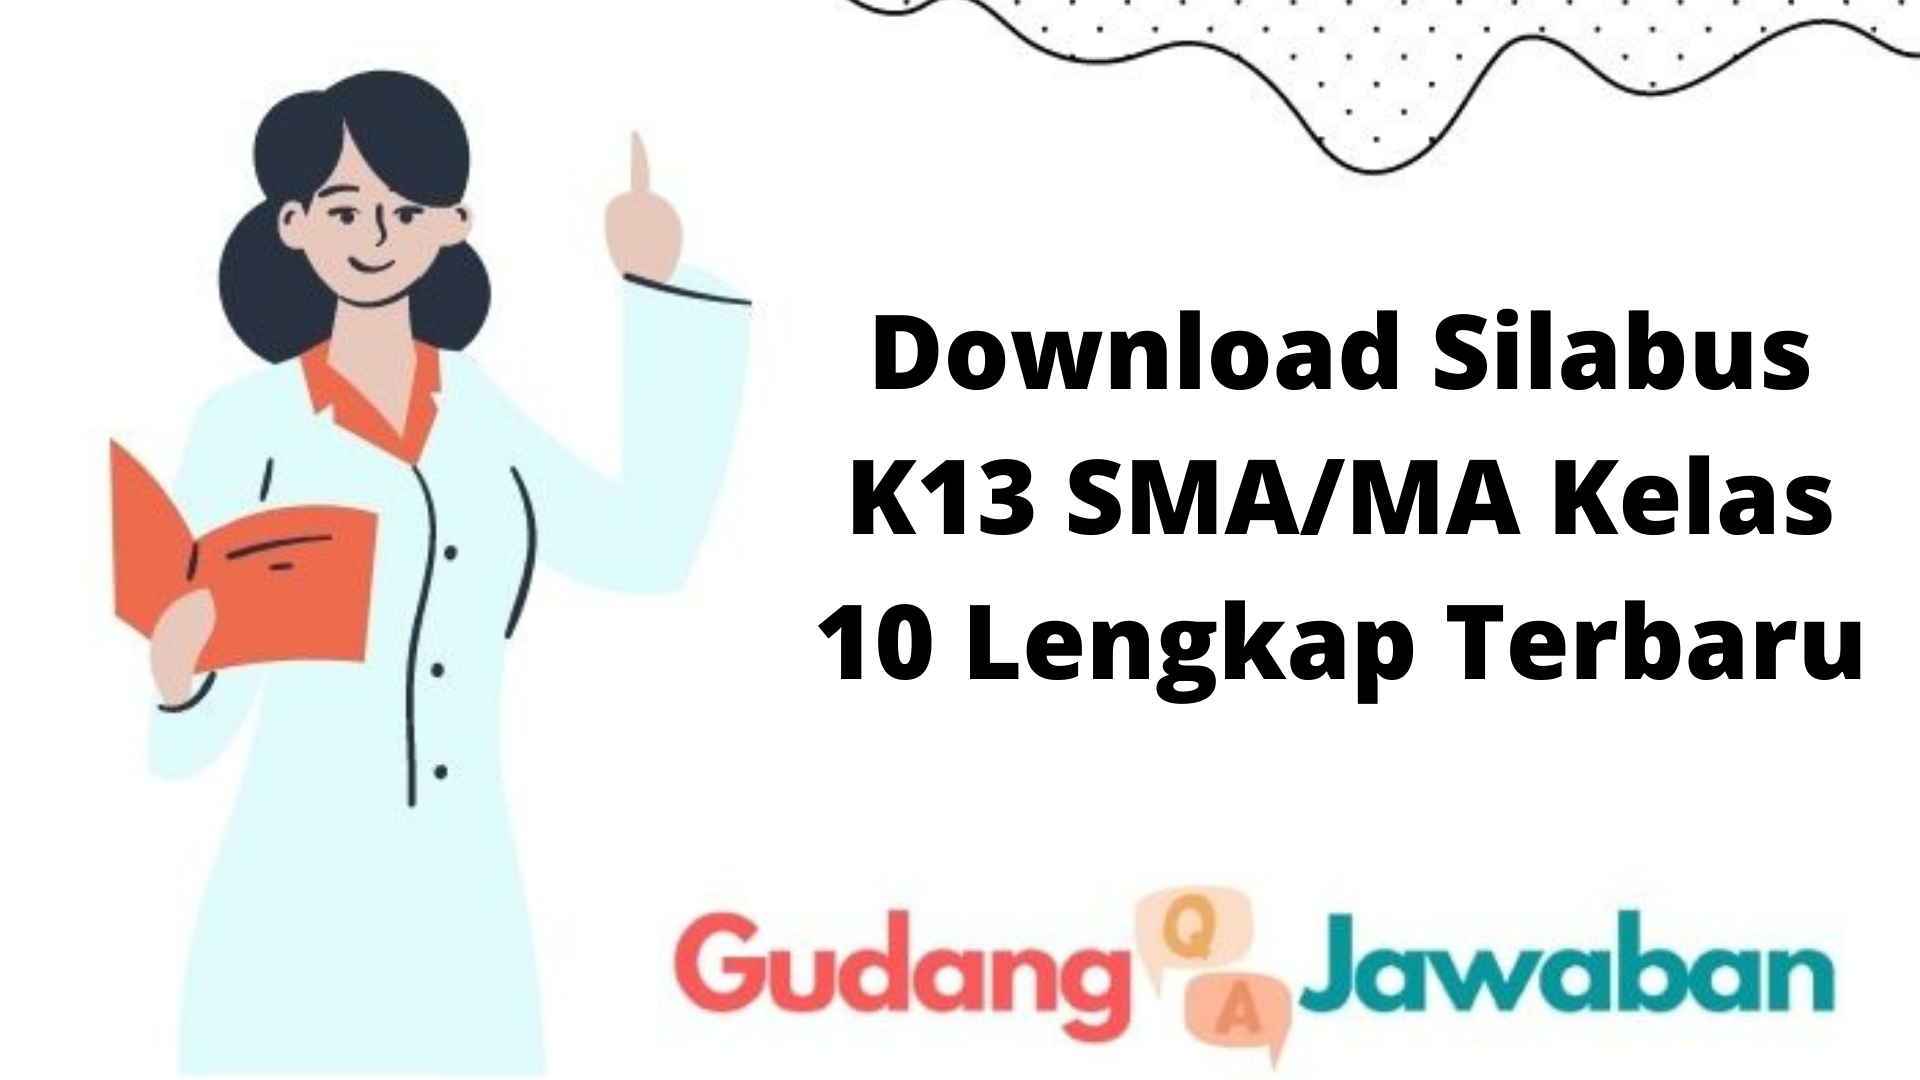 Download Silabus K13 SMA/MA Kelas 10 Lengkap Terbaru